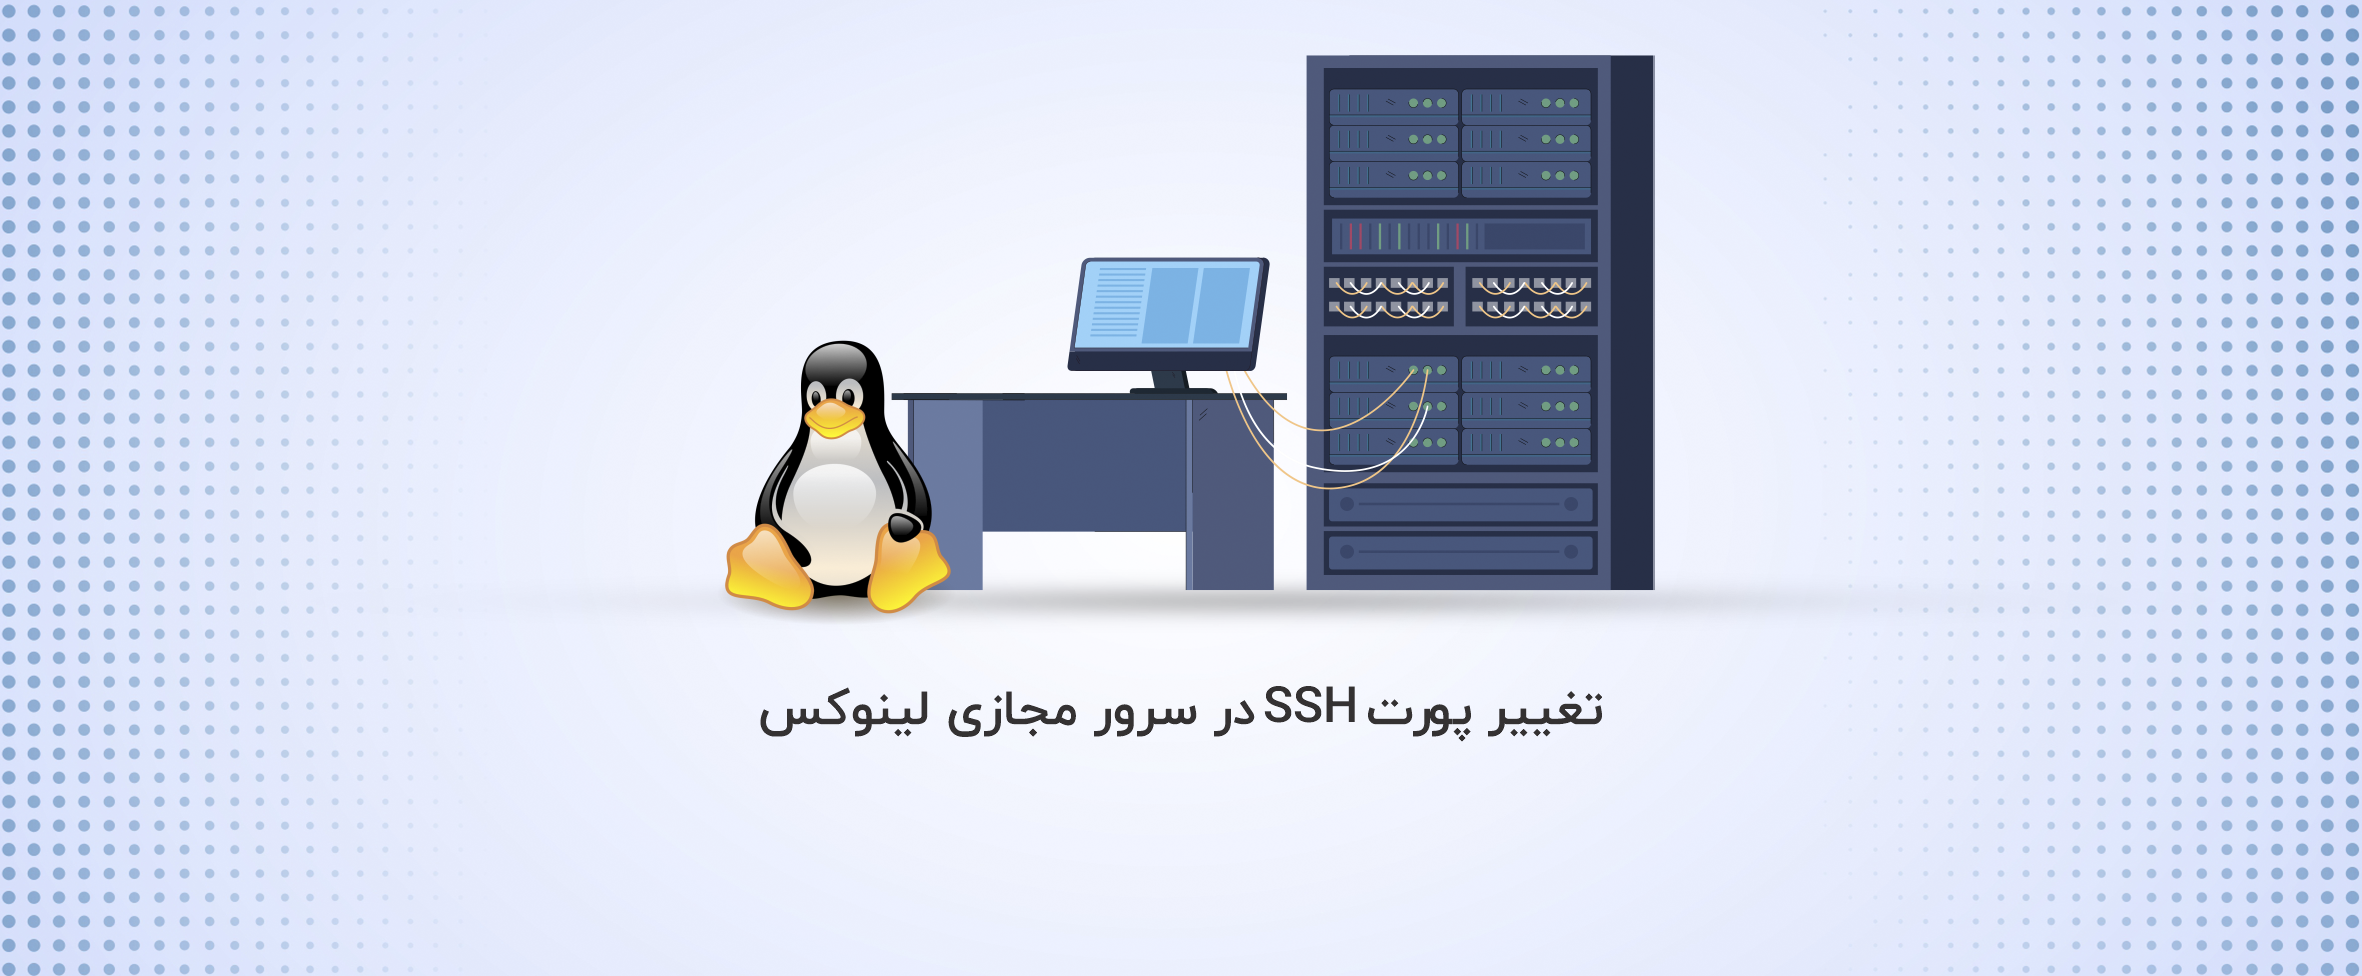 آموزش تغییر پورت SSH در سرور مجازی لینوکس - آذرسیس